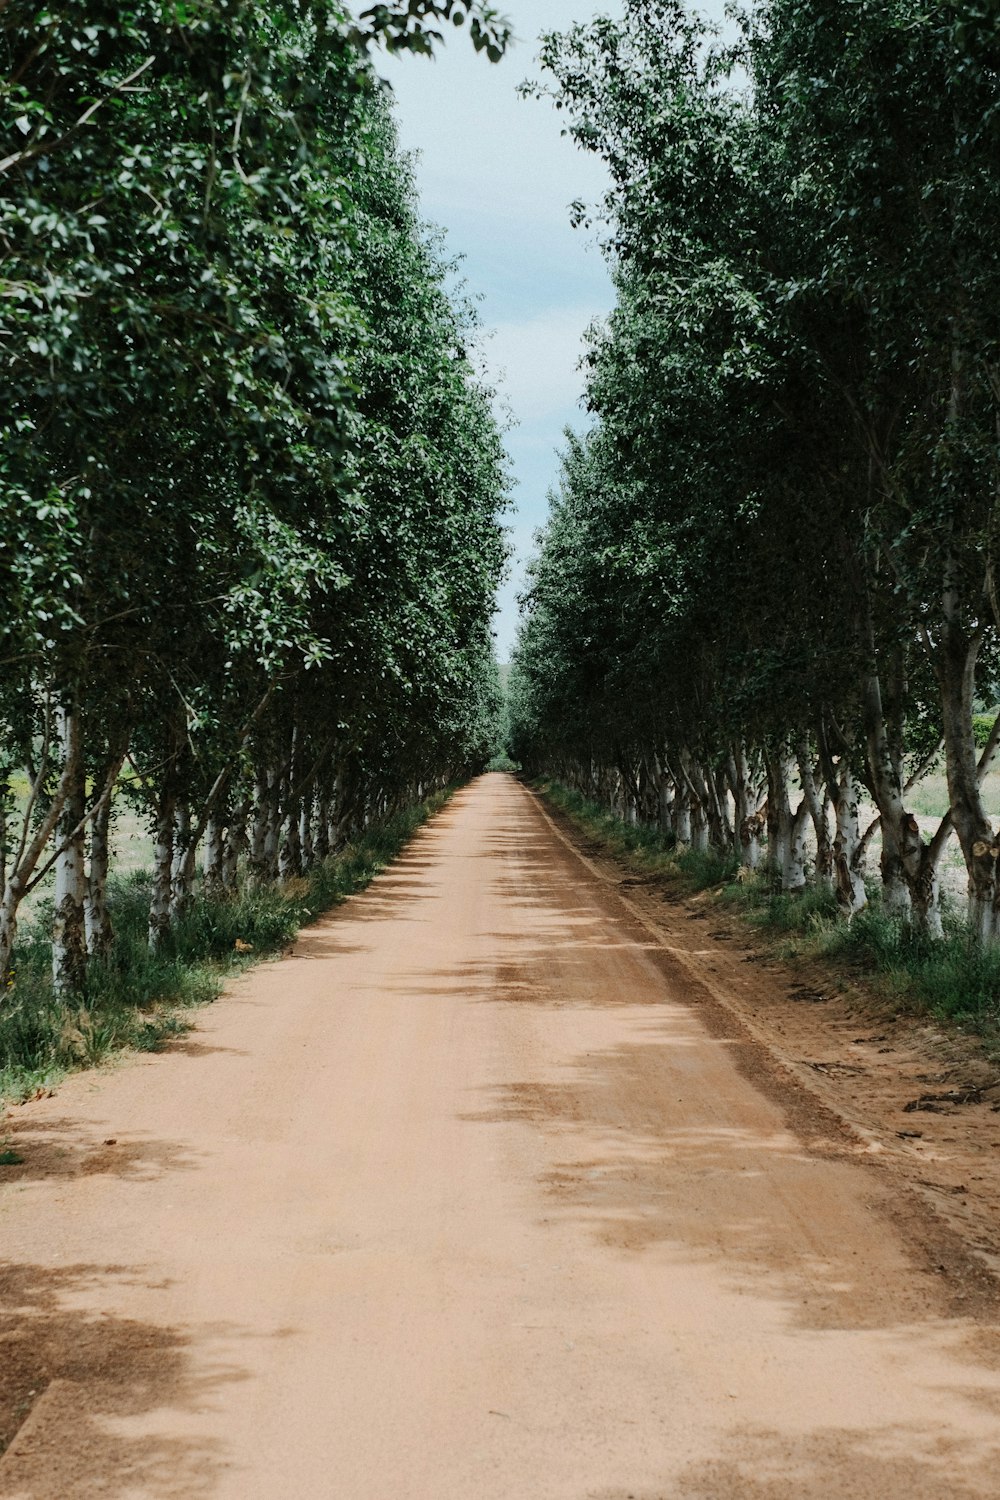 Un camino de tierra bordeado de árboles a ambos lados